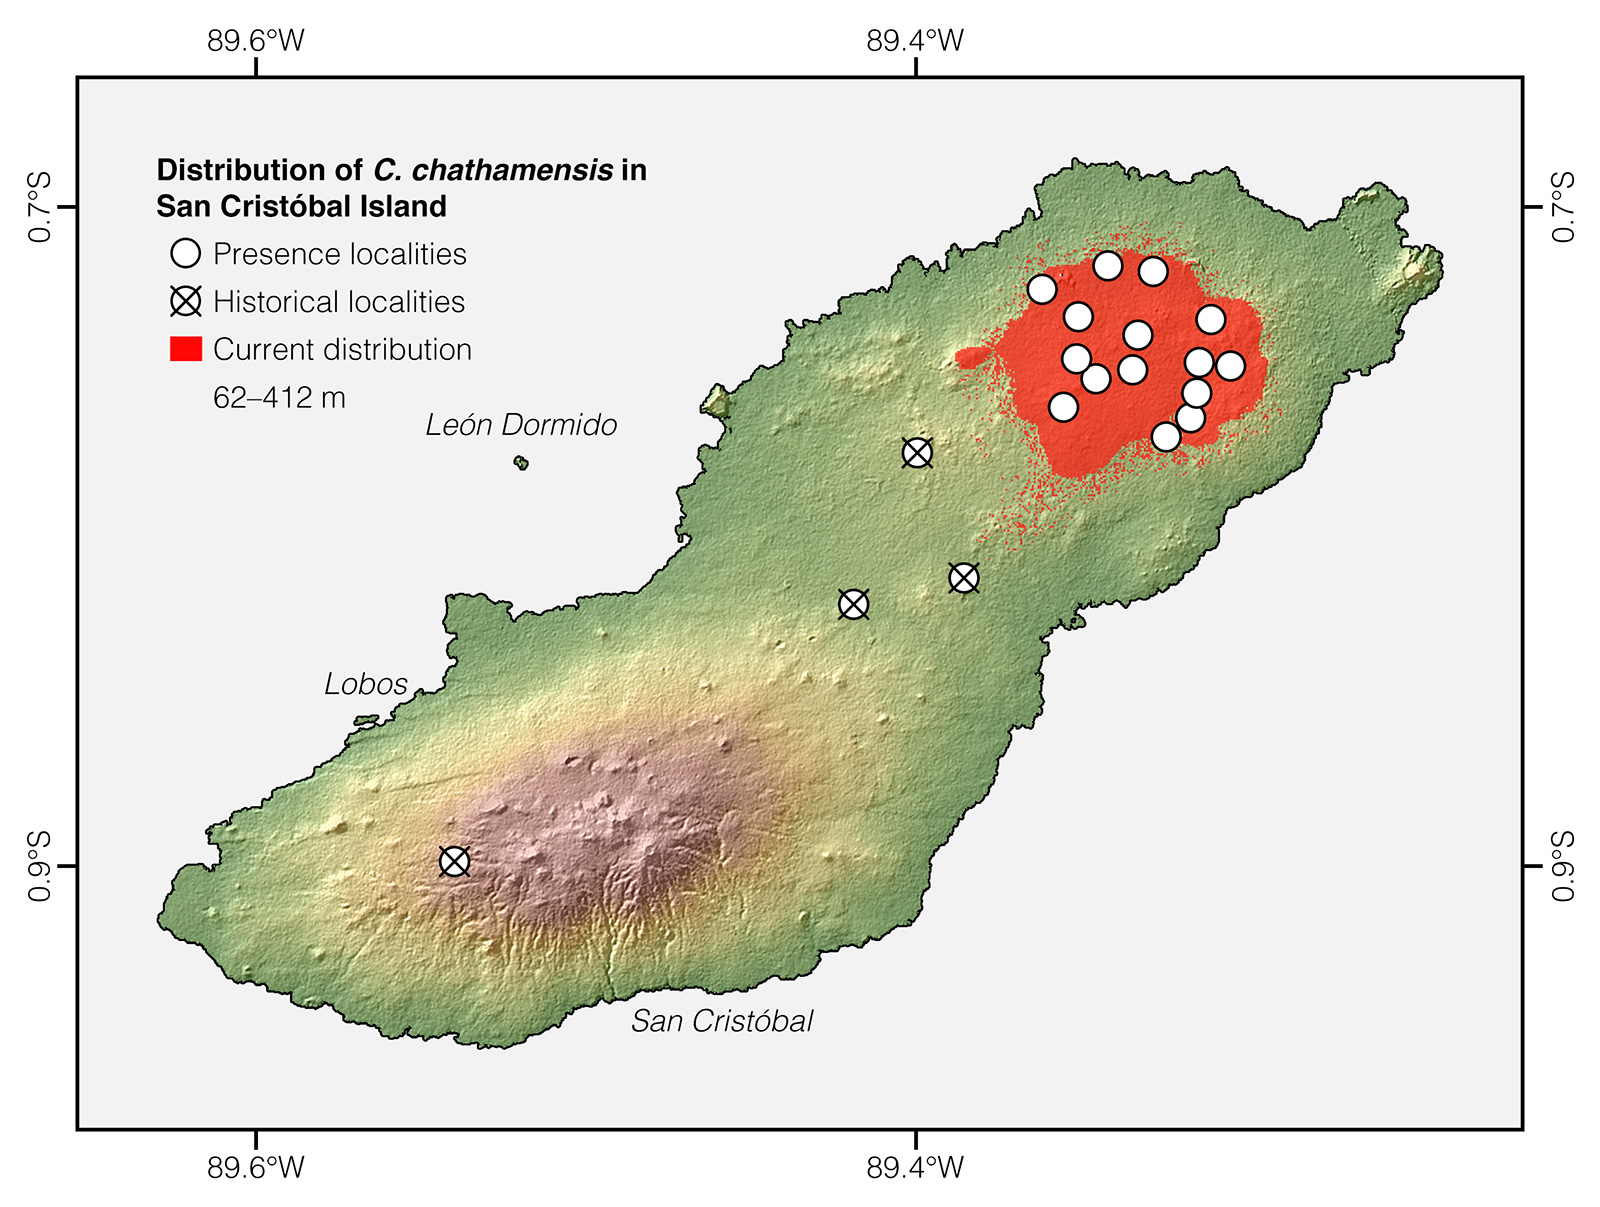 Distribution of Chelonoidis chathamensis in San Cristóbal Island